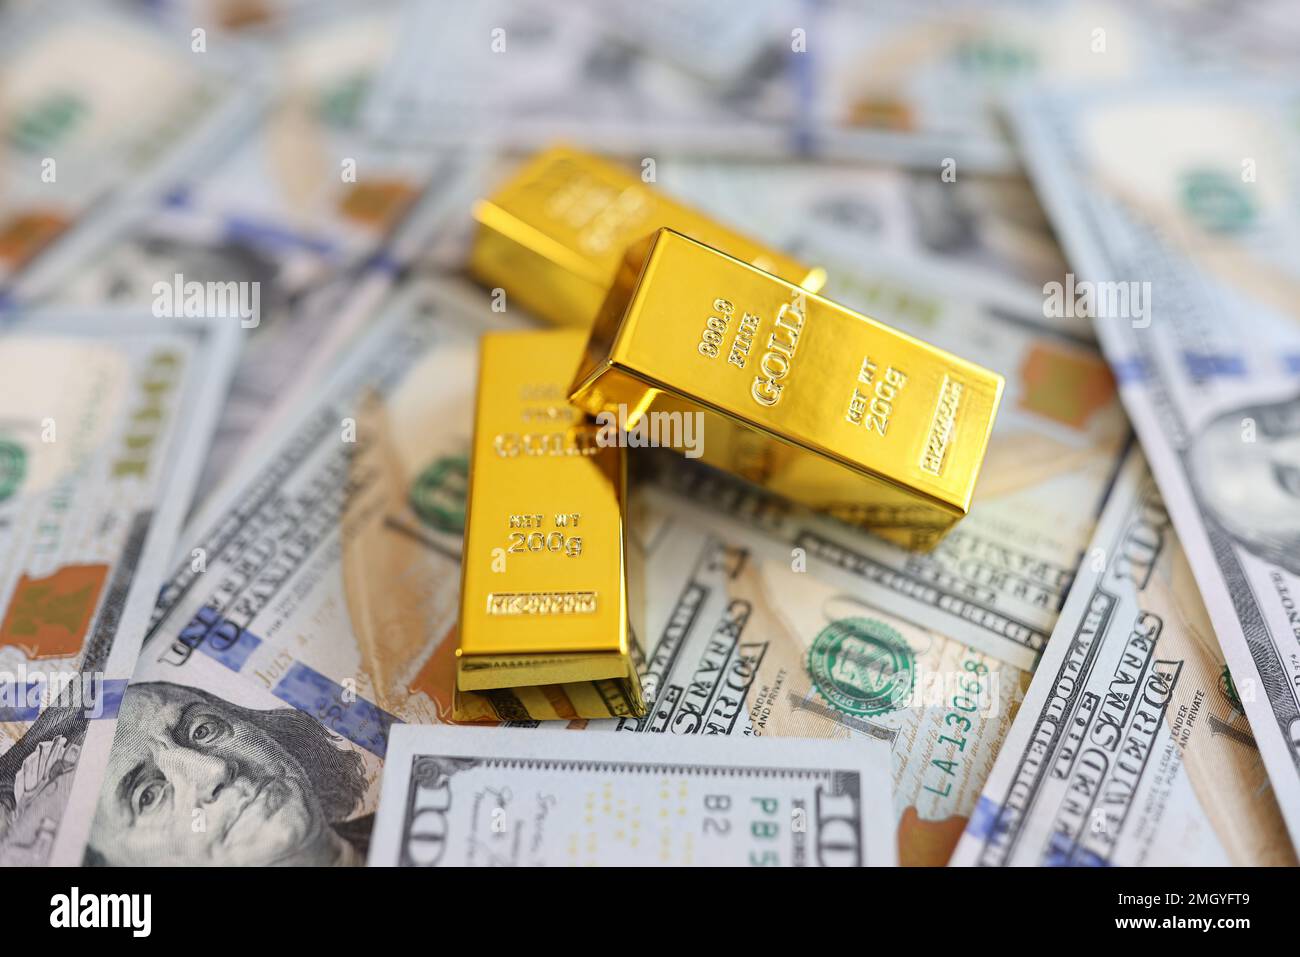 Des barres d'or sur fond de gros plans de billets en dollars américains. Banque D'Images